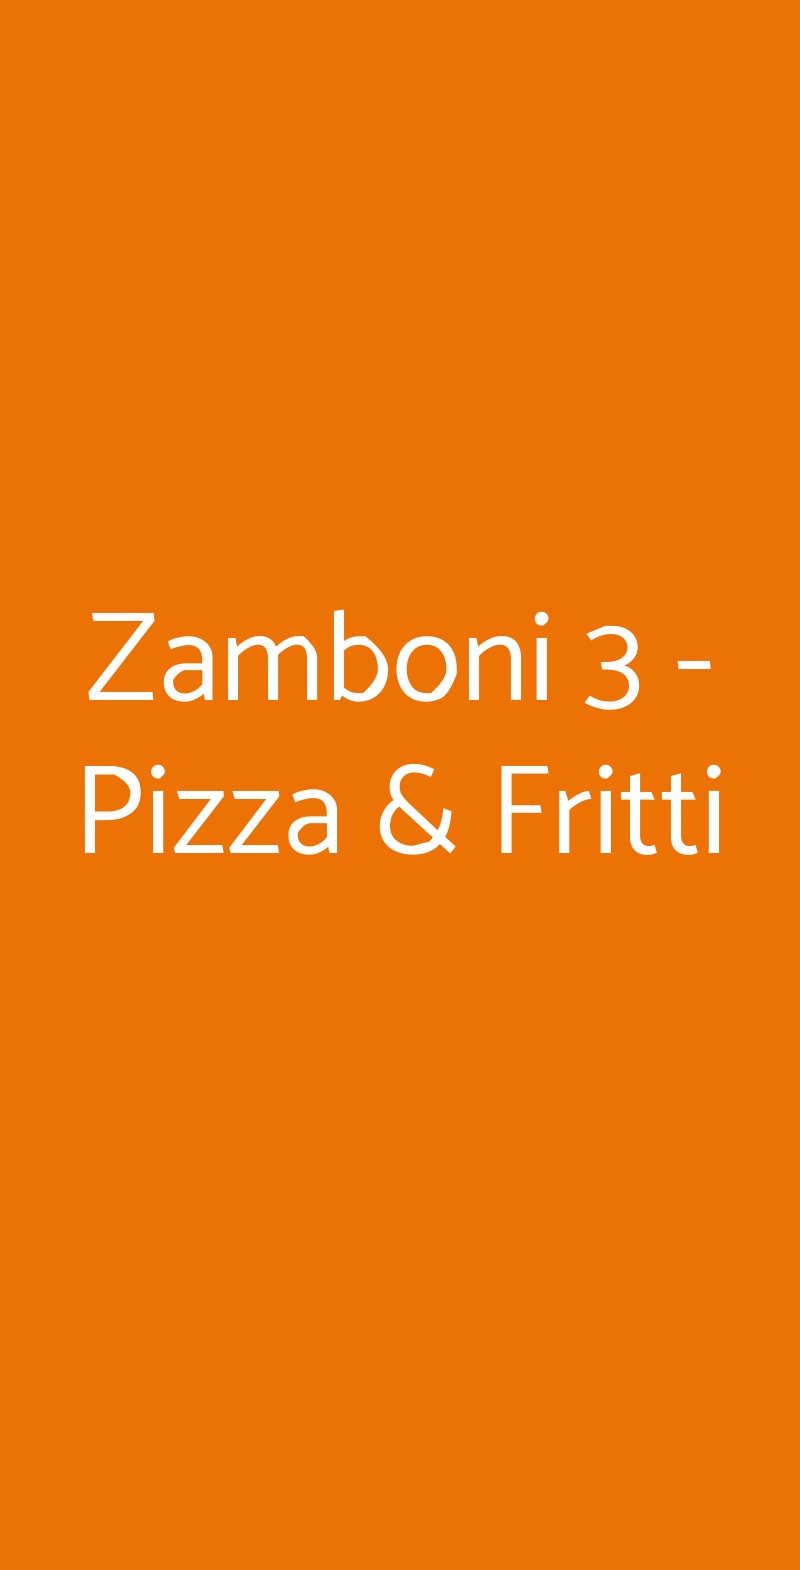 Zamboni 3 - Pizza & Fritti Bologna menù 1 pagina